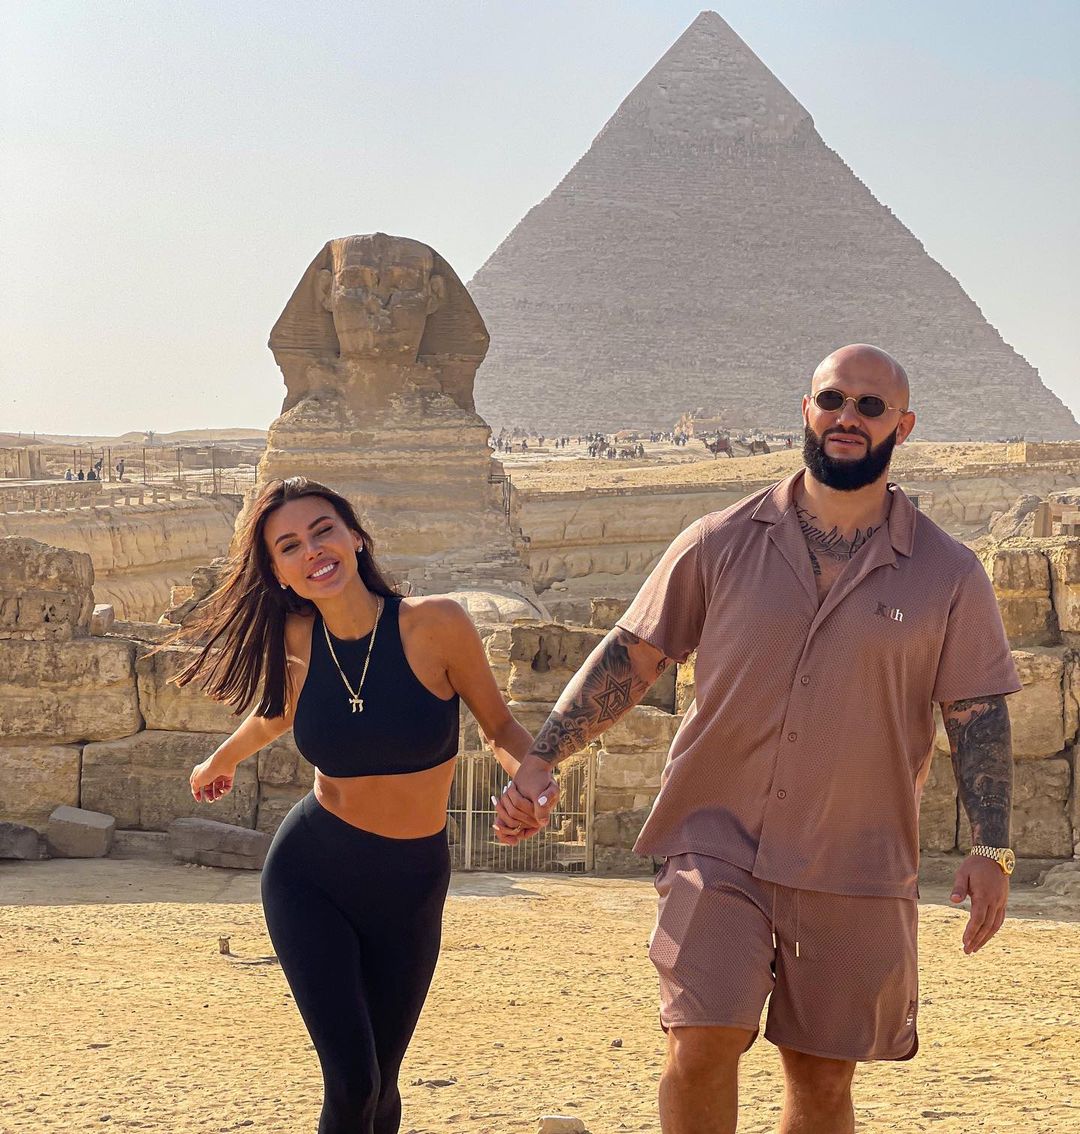 "Завтрак с видом на пирамиды": Оксана Самойлова и Джиган отправились в Каир